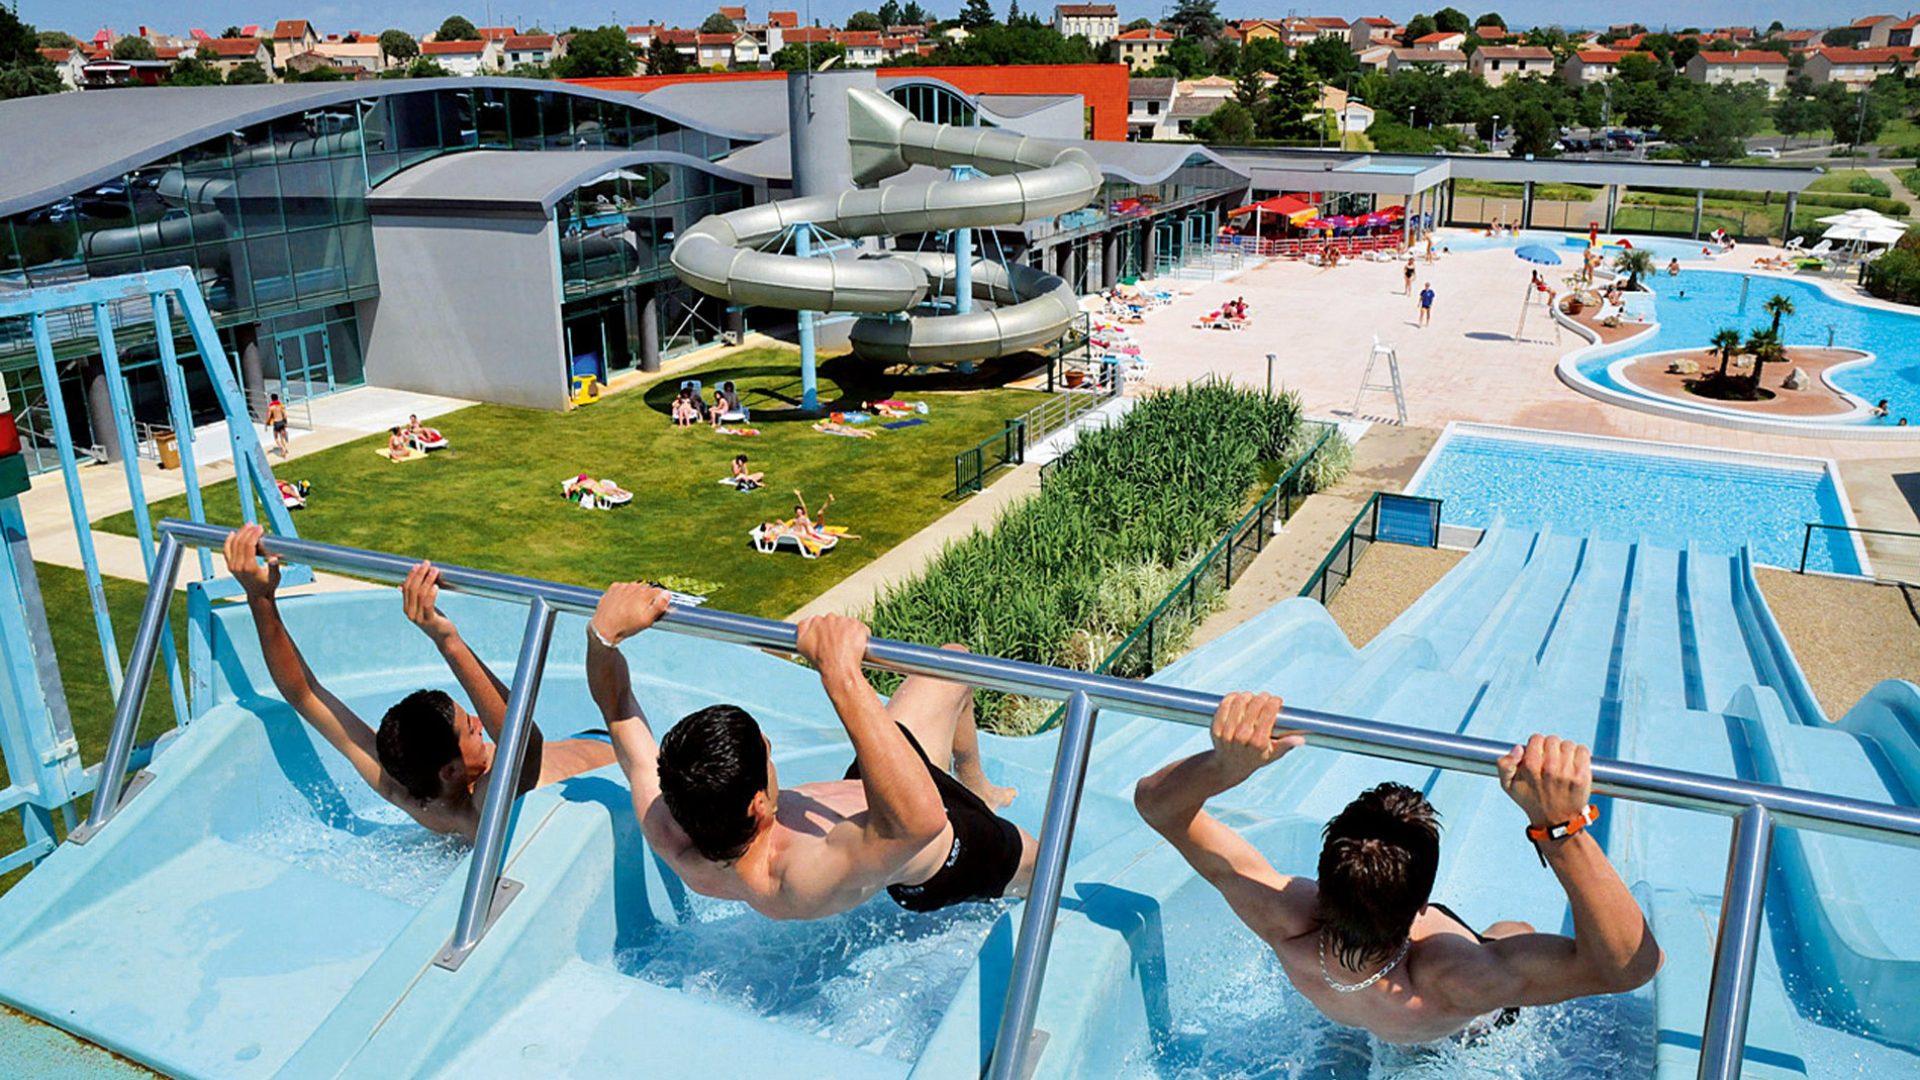 Albi - Area Acquatica Atlantis - sport e tempo libero, piscine interne ed esterne